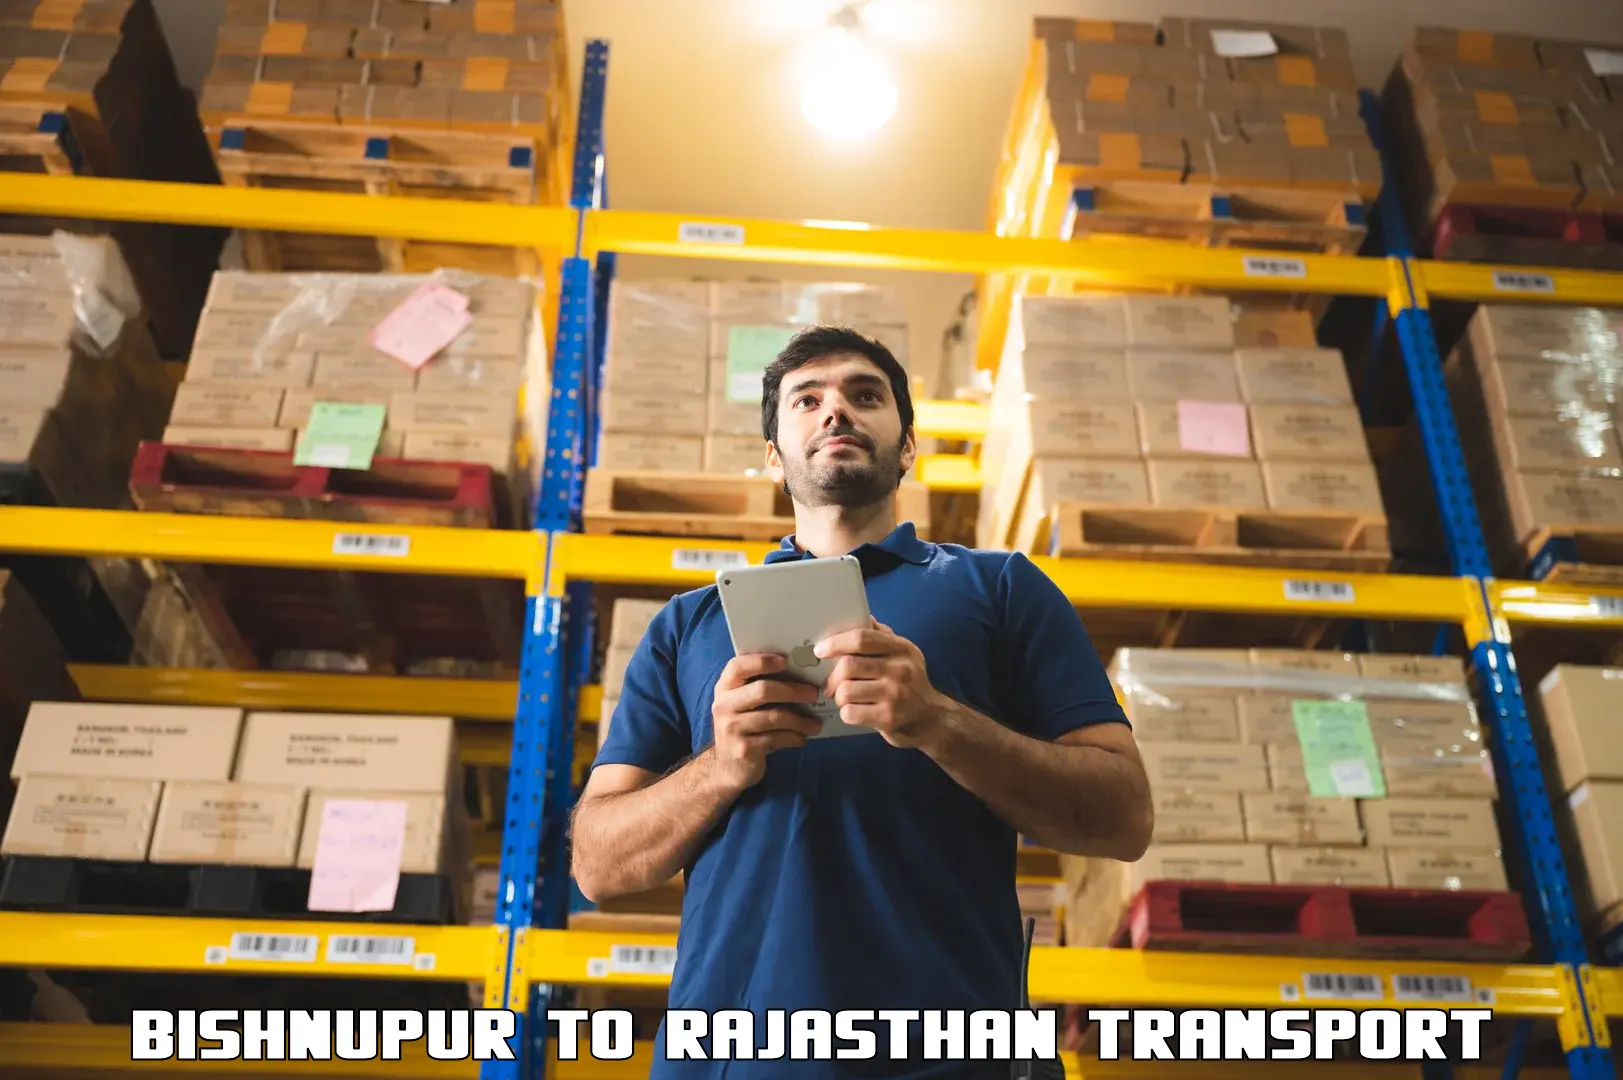 Furniture transport service Bishnupur to Asind